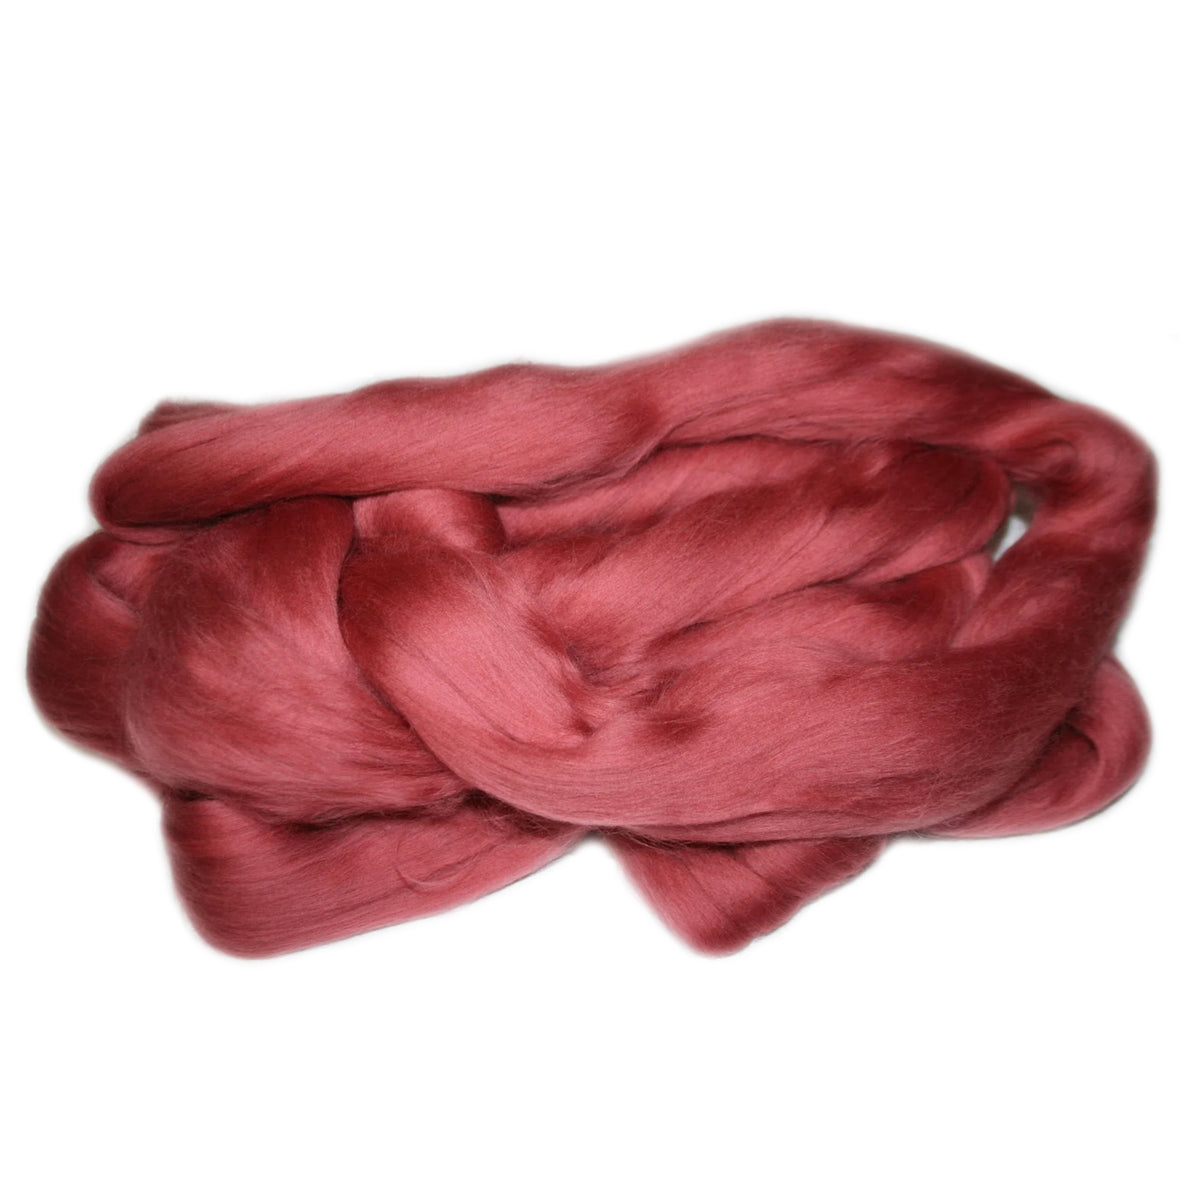 Merino Wool Top Rhubarb 1950g